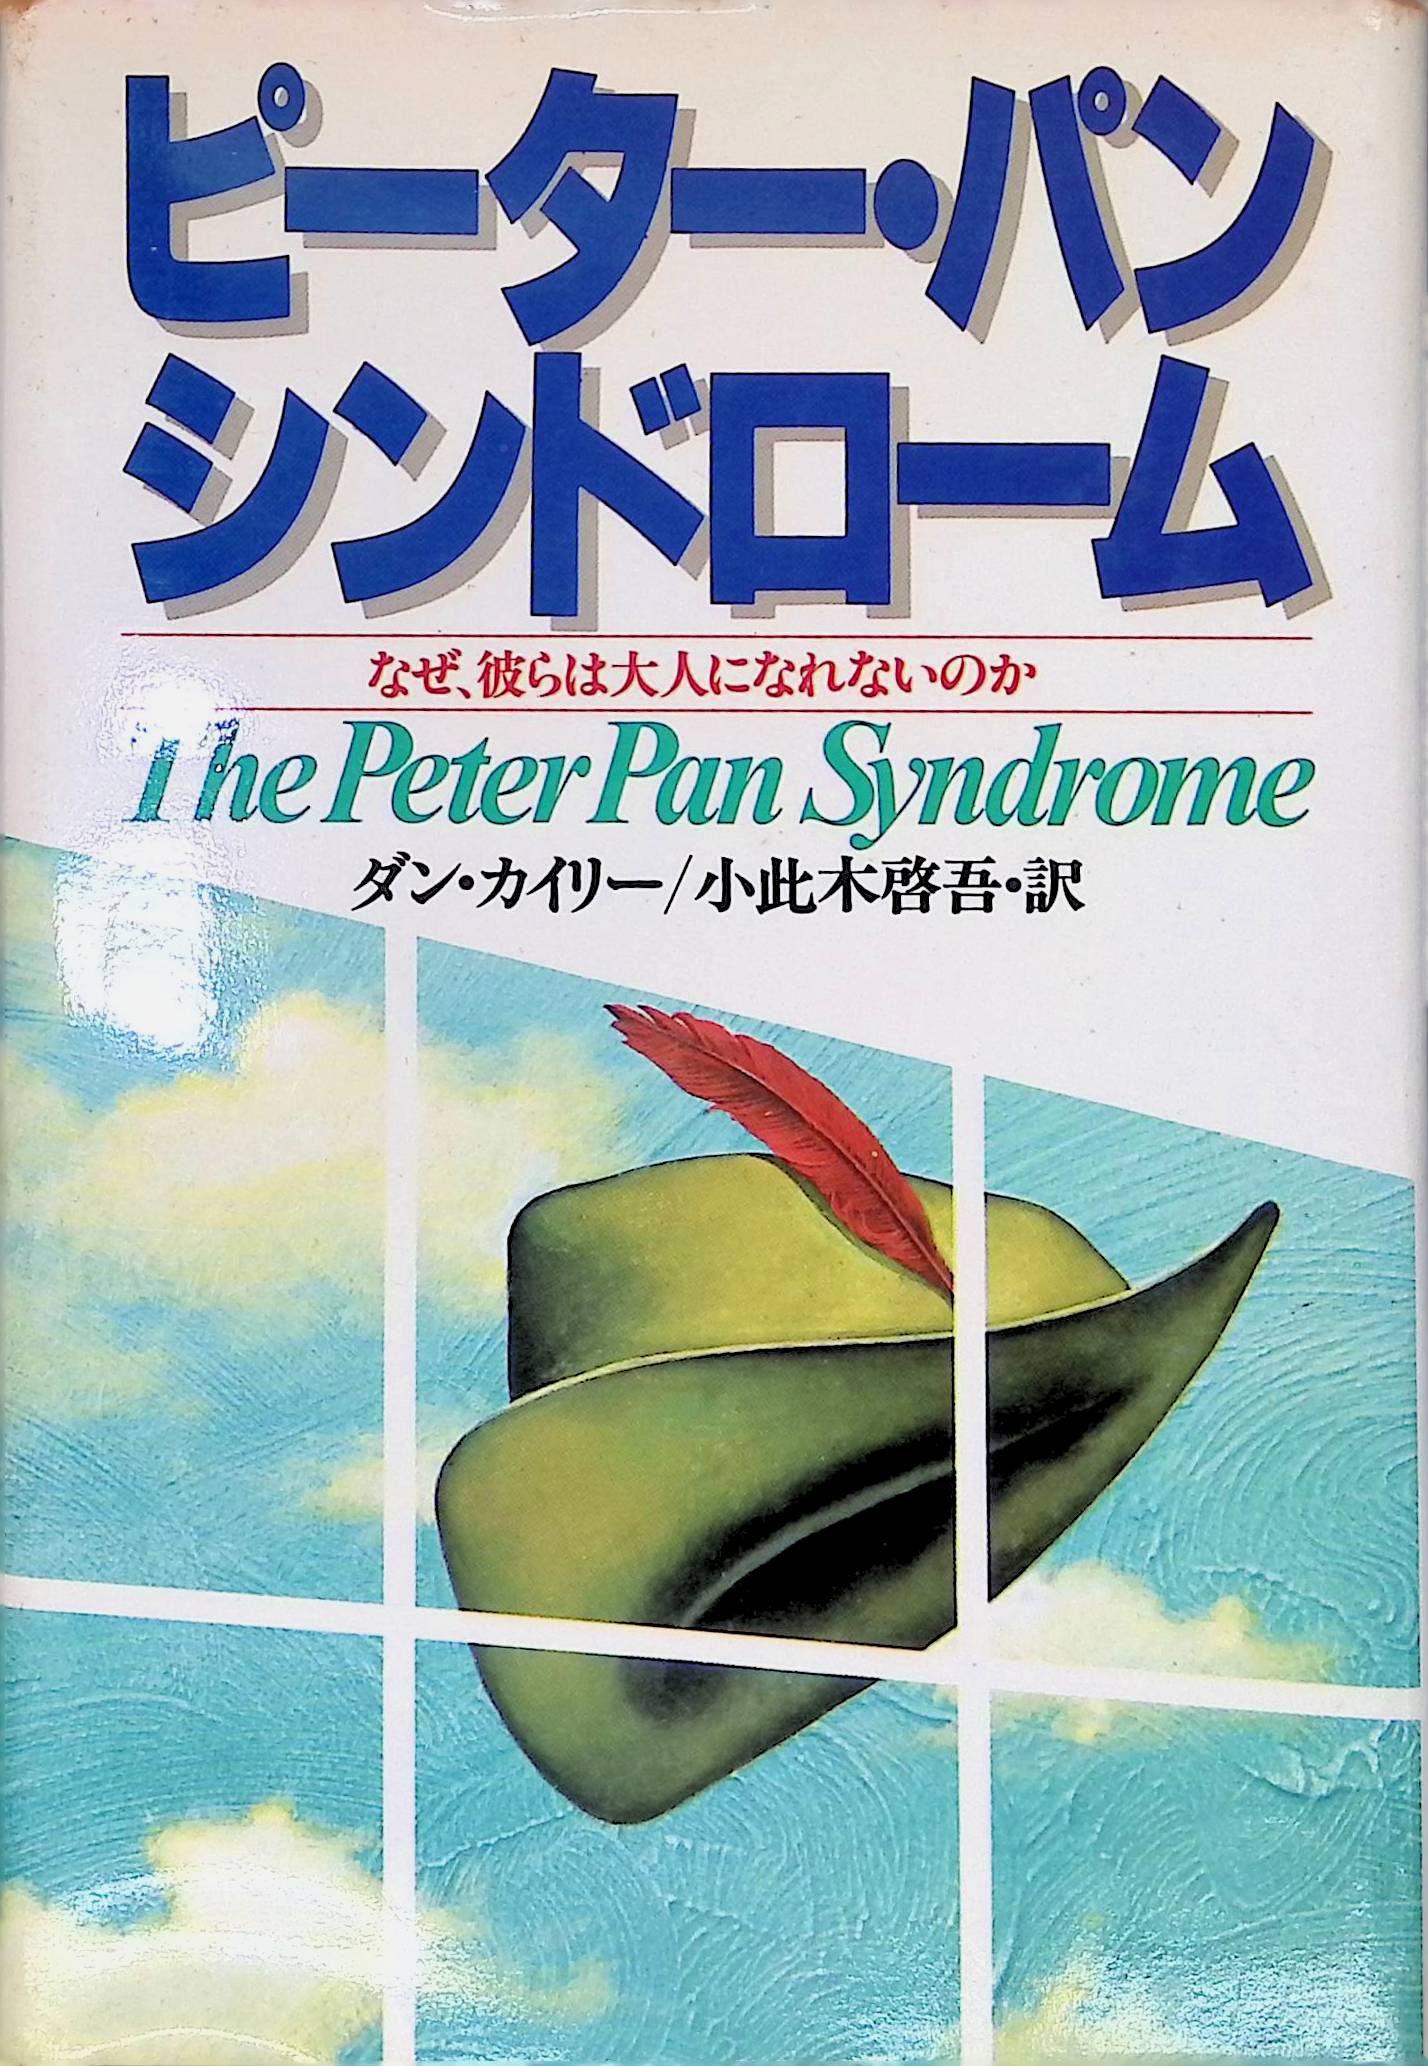 ピーター・パン・シンドローム―なぜ、彼らは大人になれないのか[ダン・カイリー](祥伝社)(ISBN:4396650035)